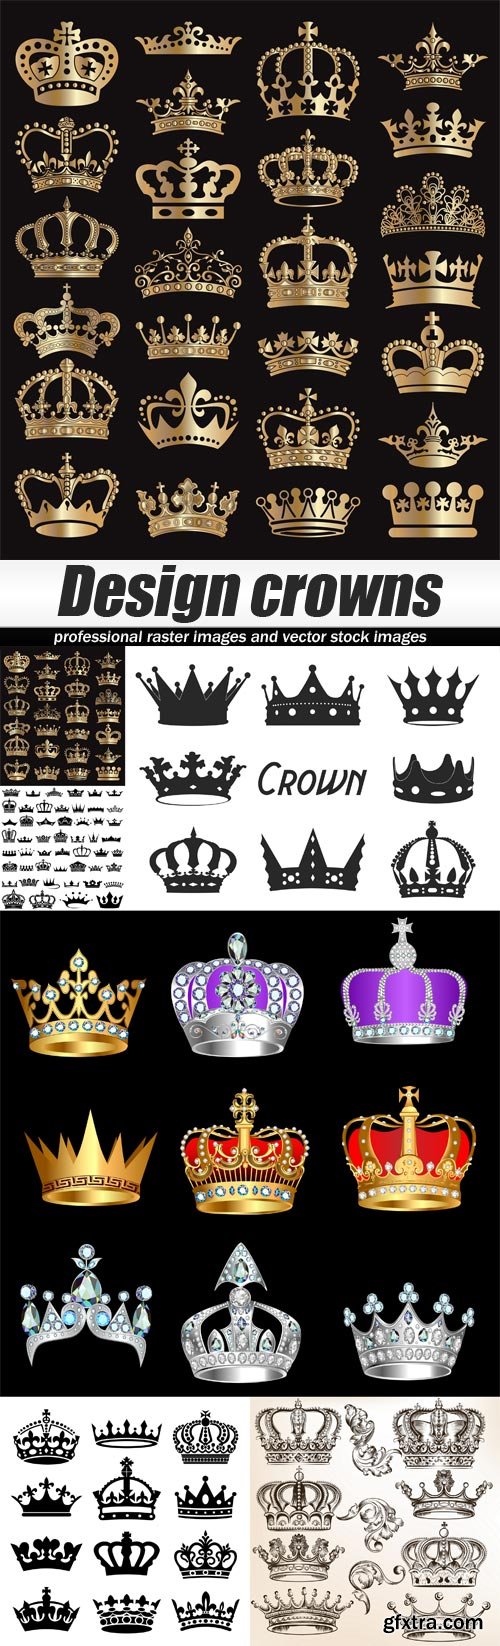 Design crowns